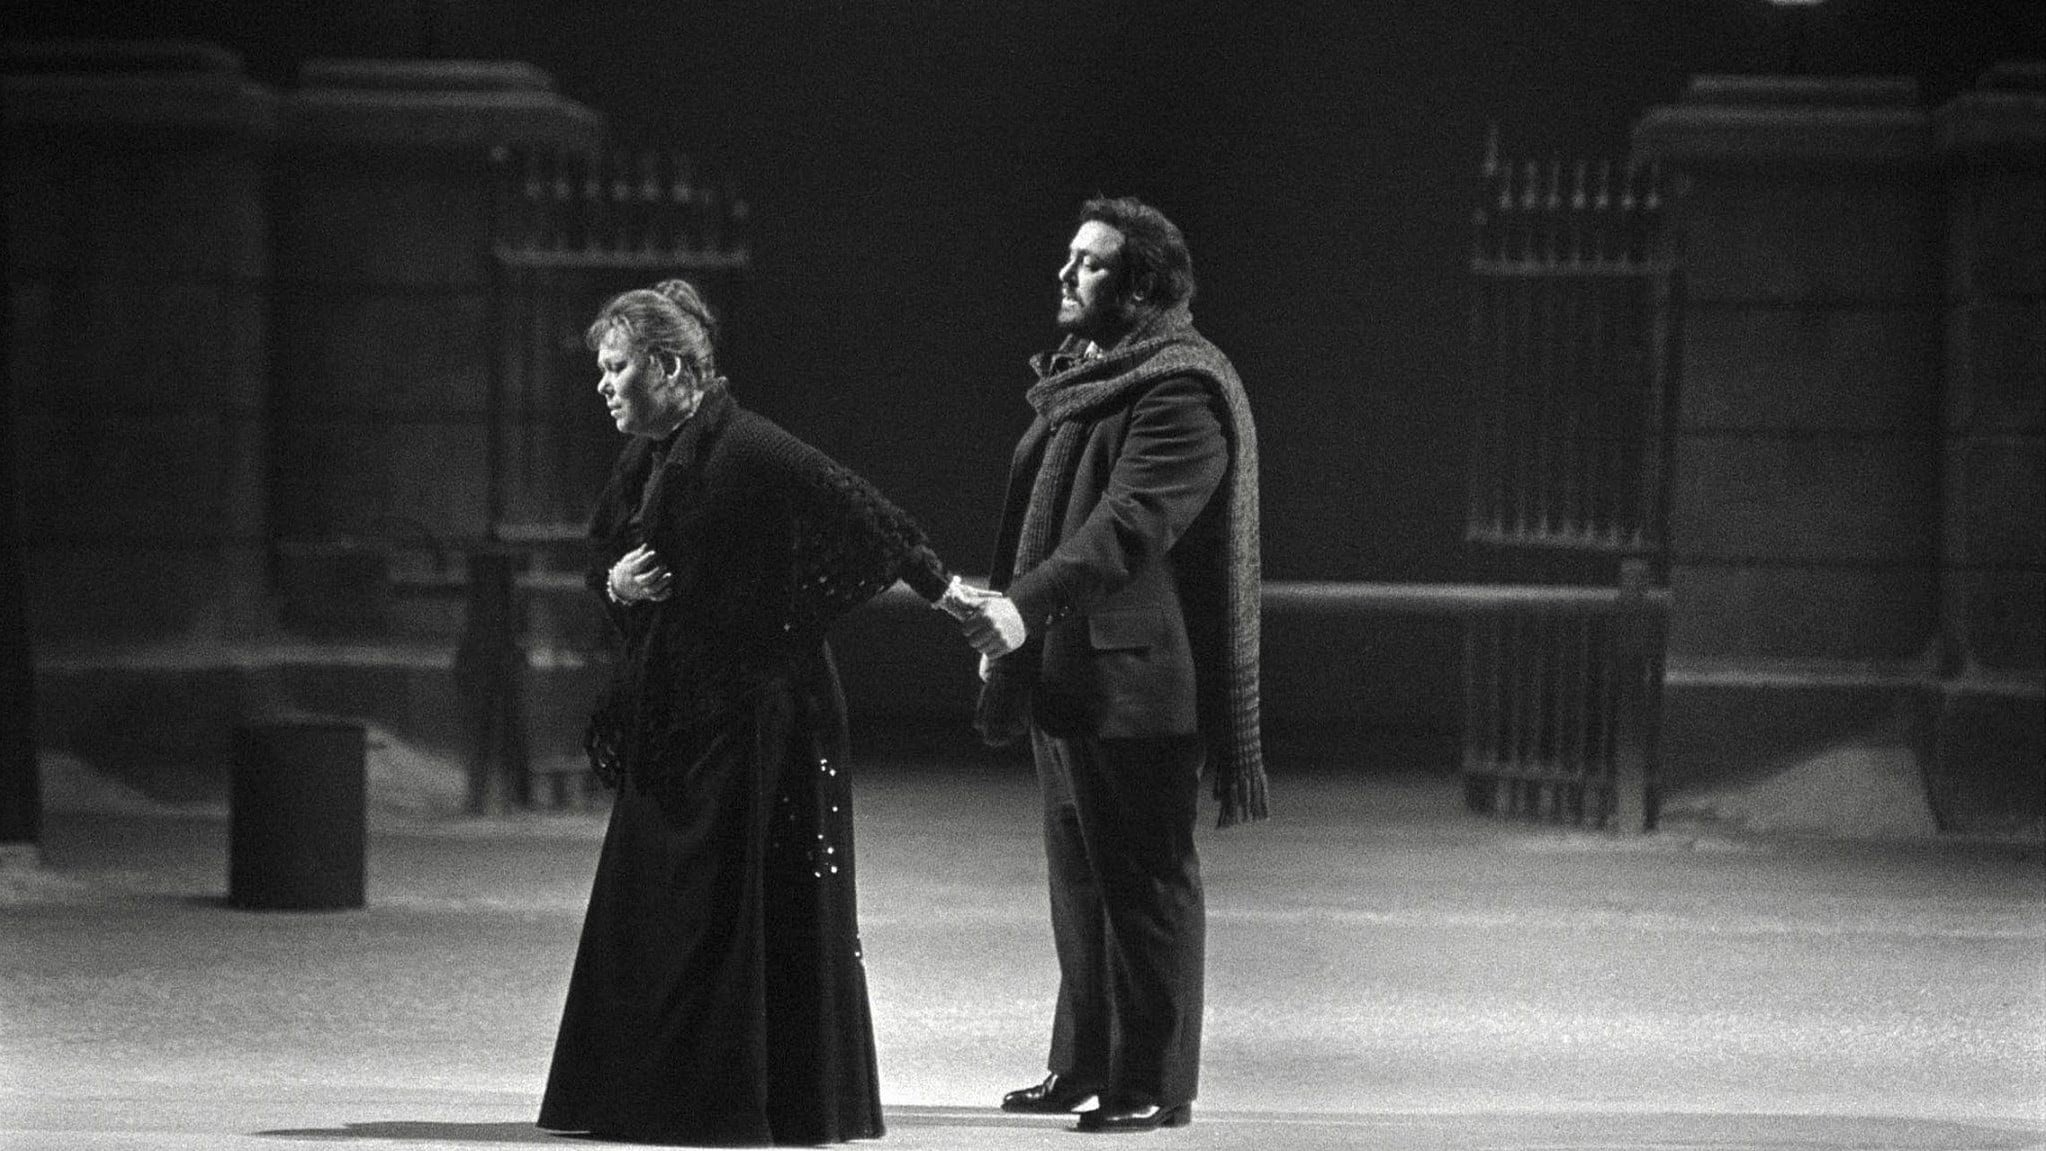 La Bohème (1977)